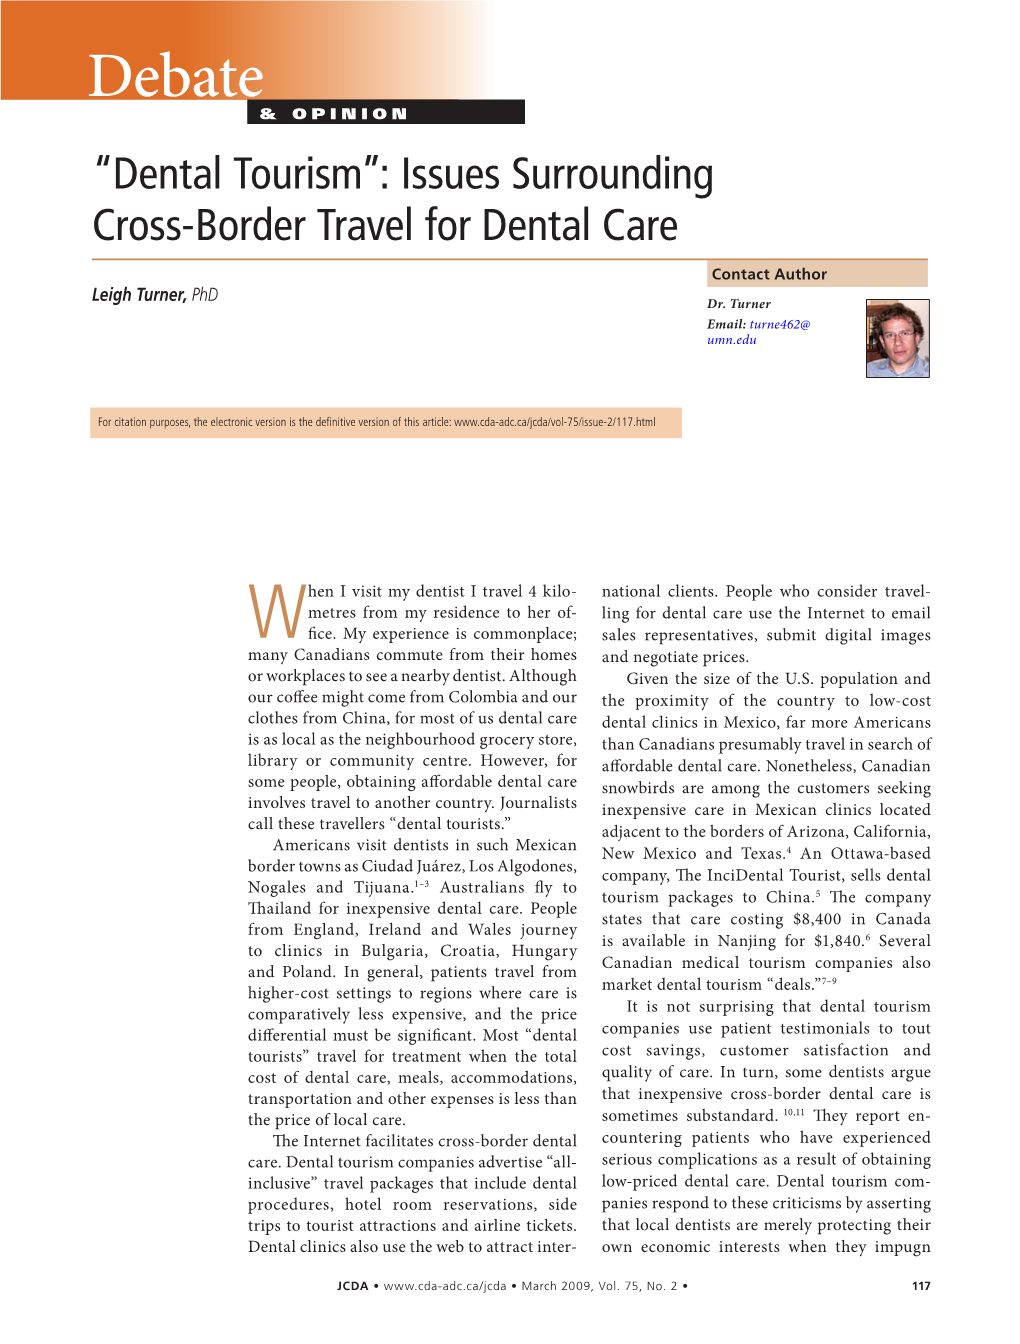 “Dental Tourism”: Issues Surrounding Cross-Border Travel for Dental Care